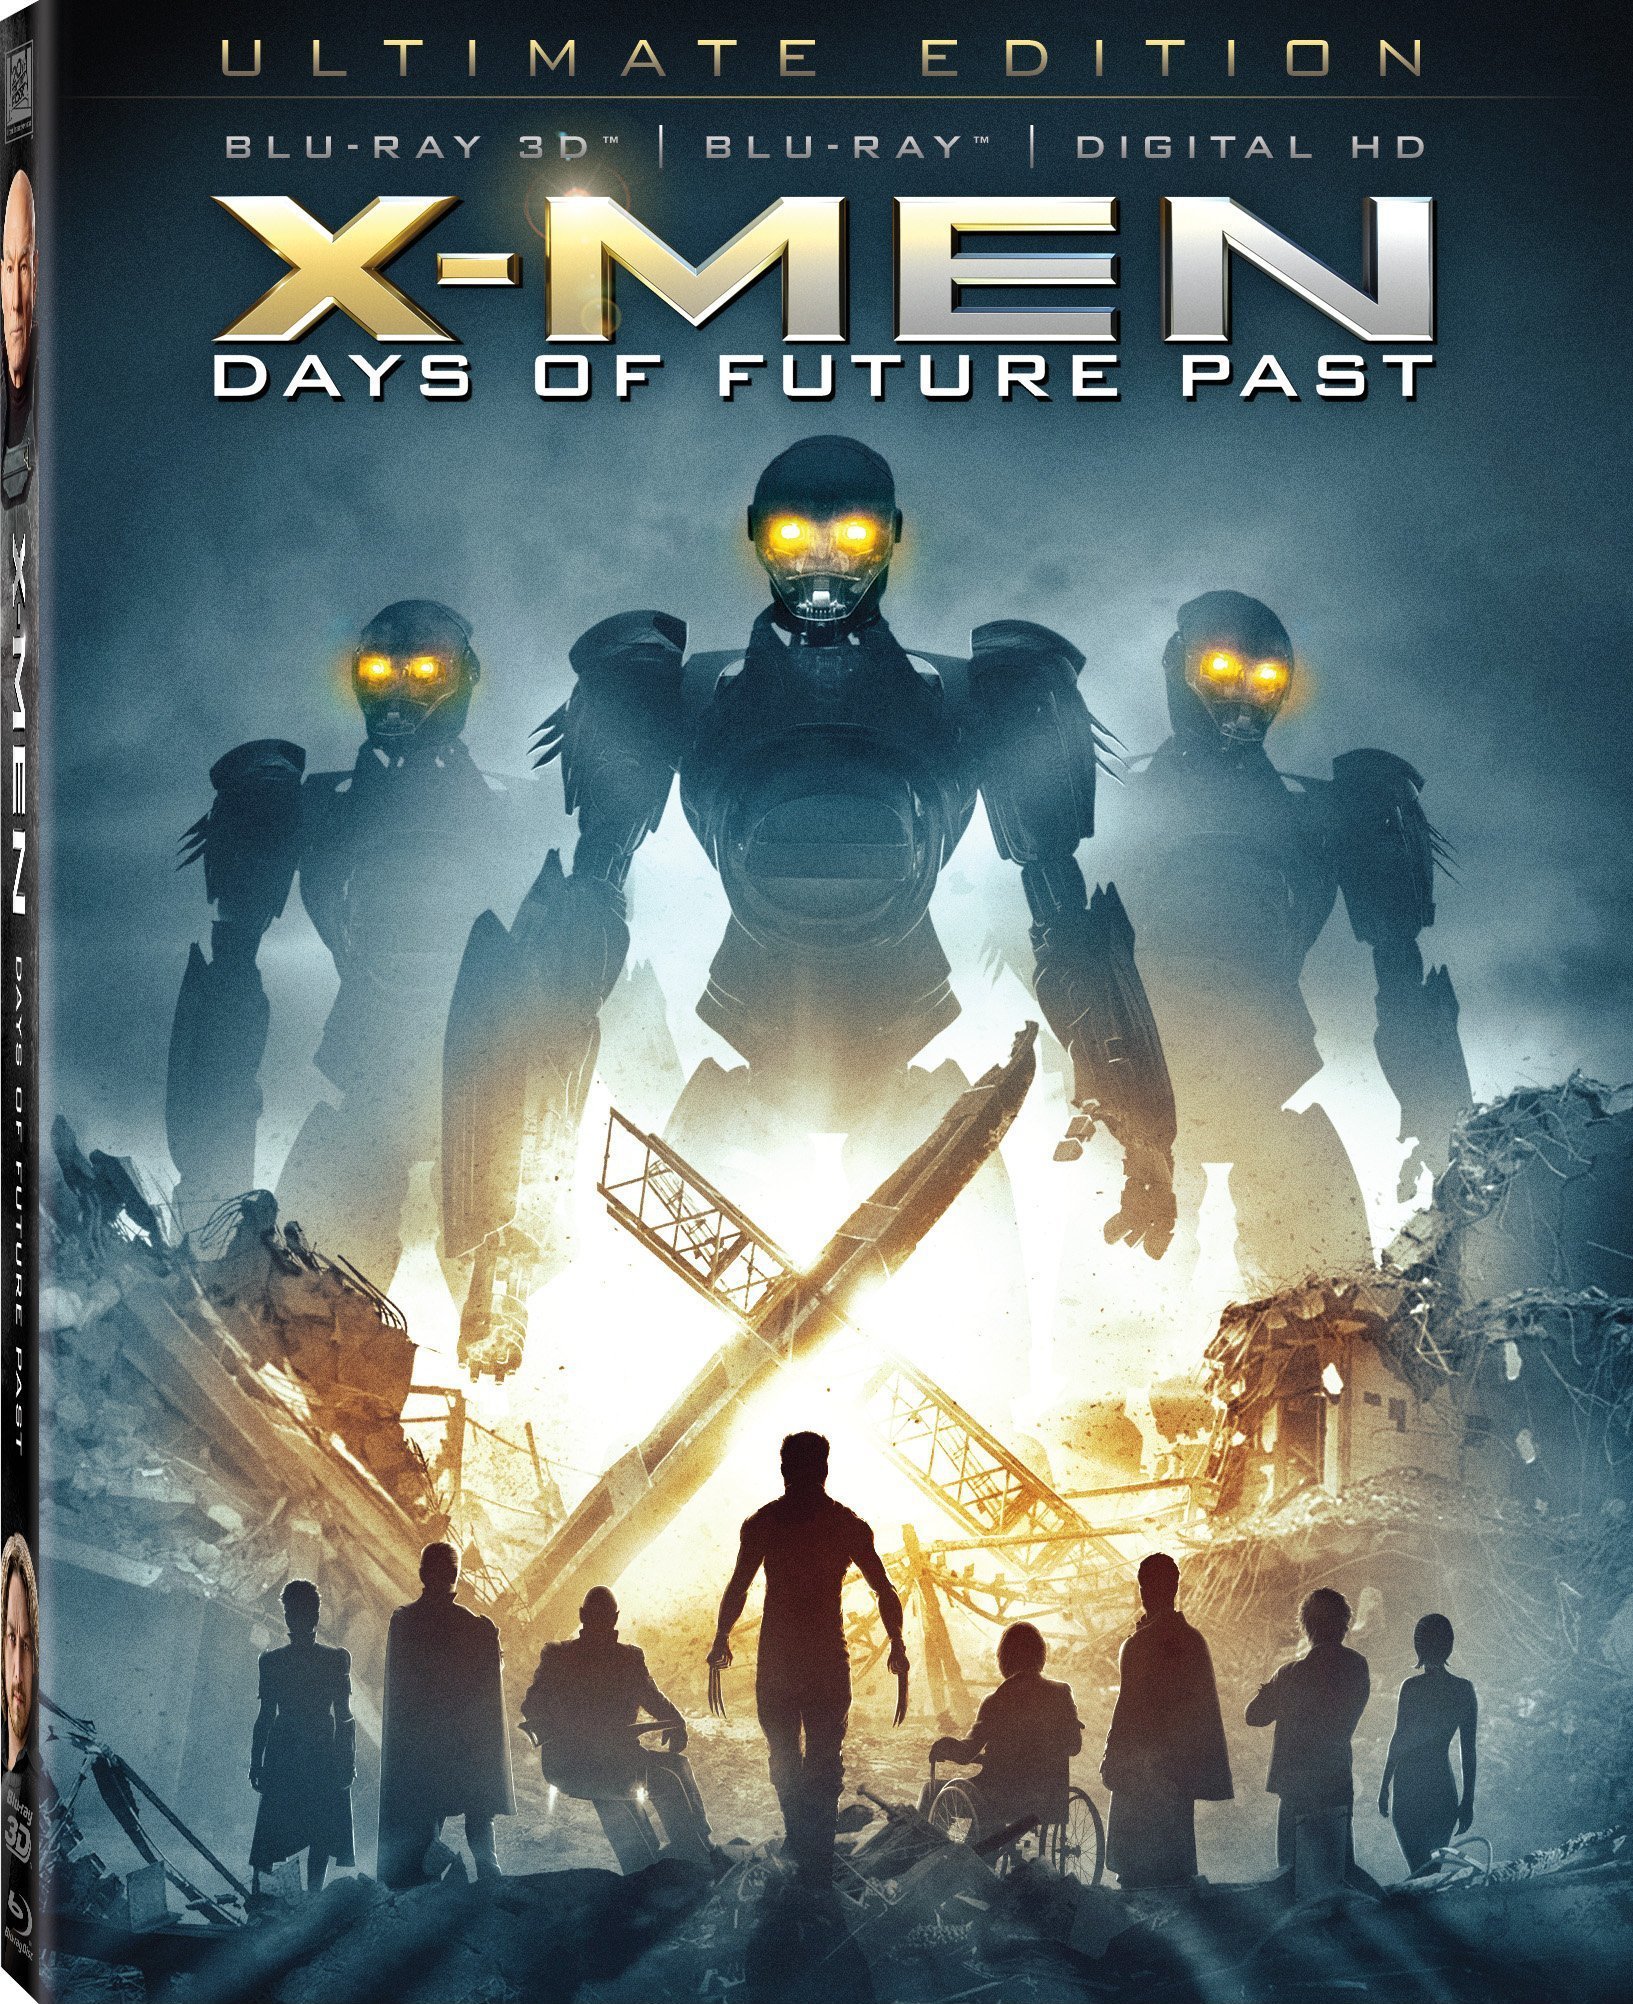 X-Men Days of Future Past